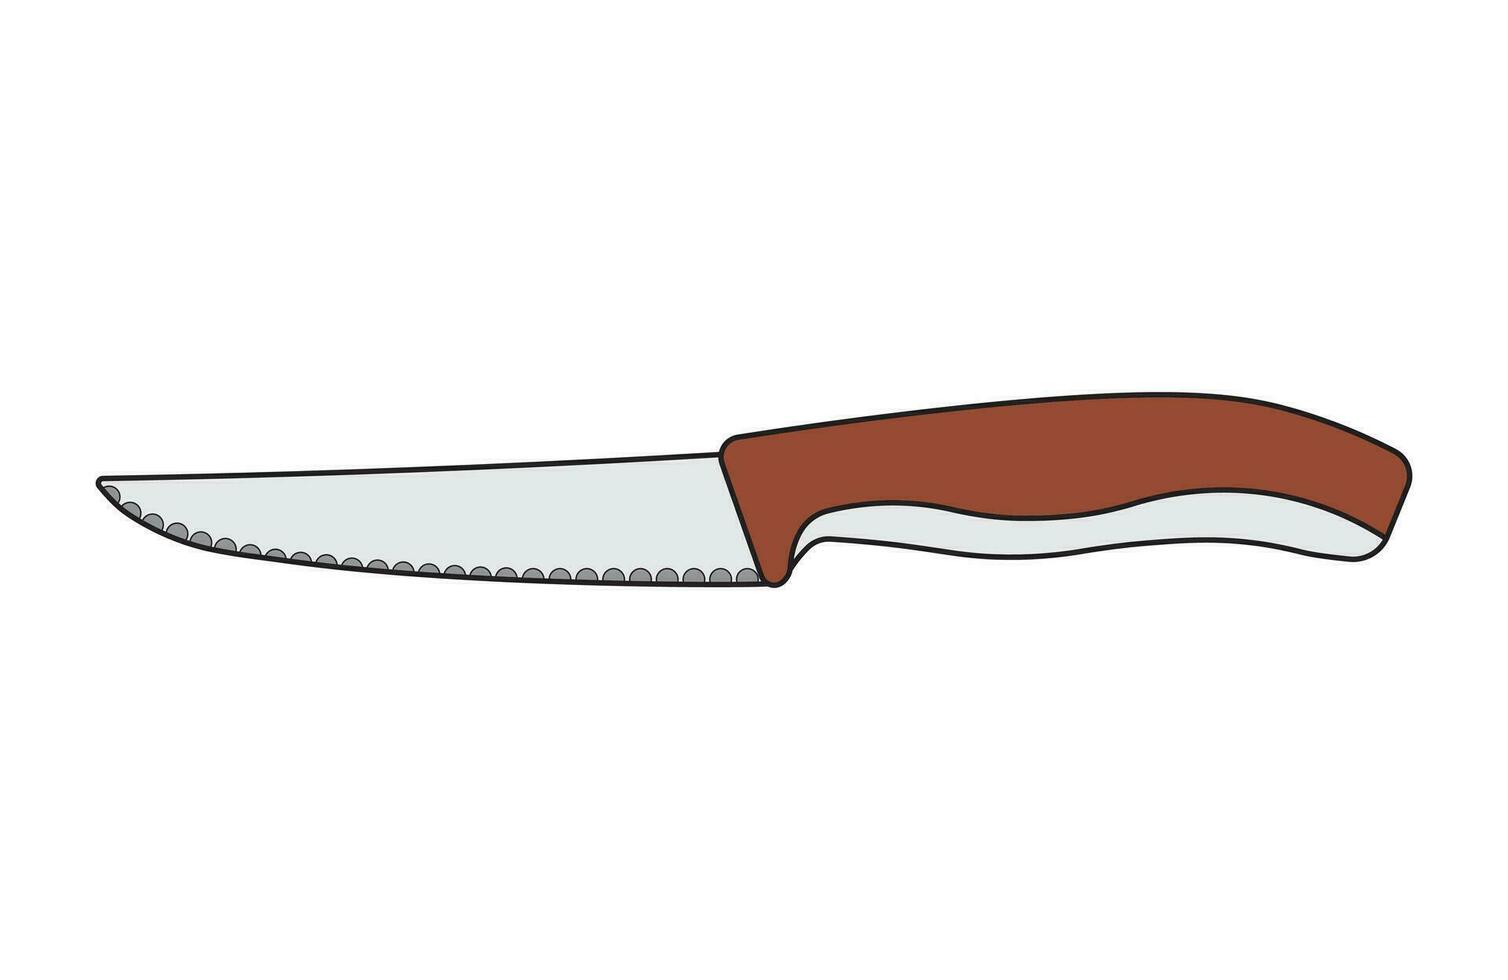 des gamins dessin dessin animé vecteur illustration steak couteau isolé dans griffonnage style